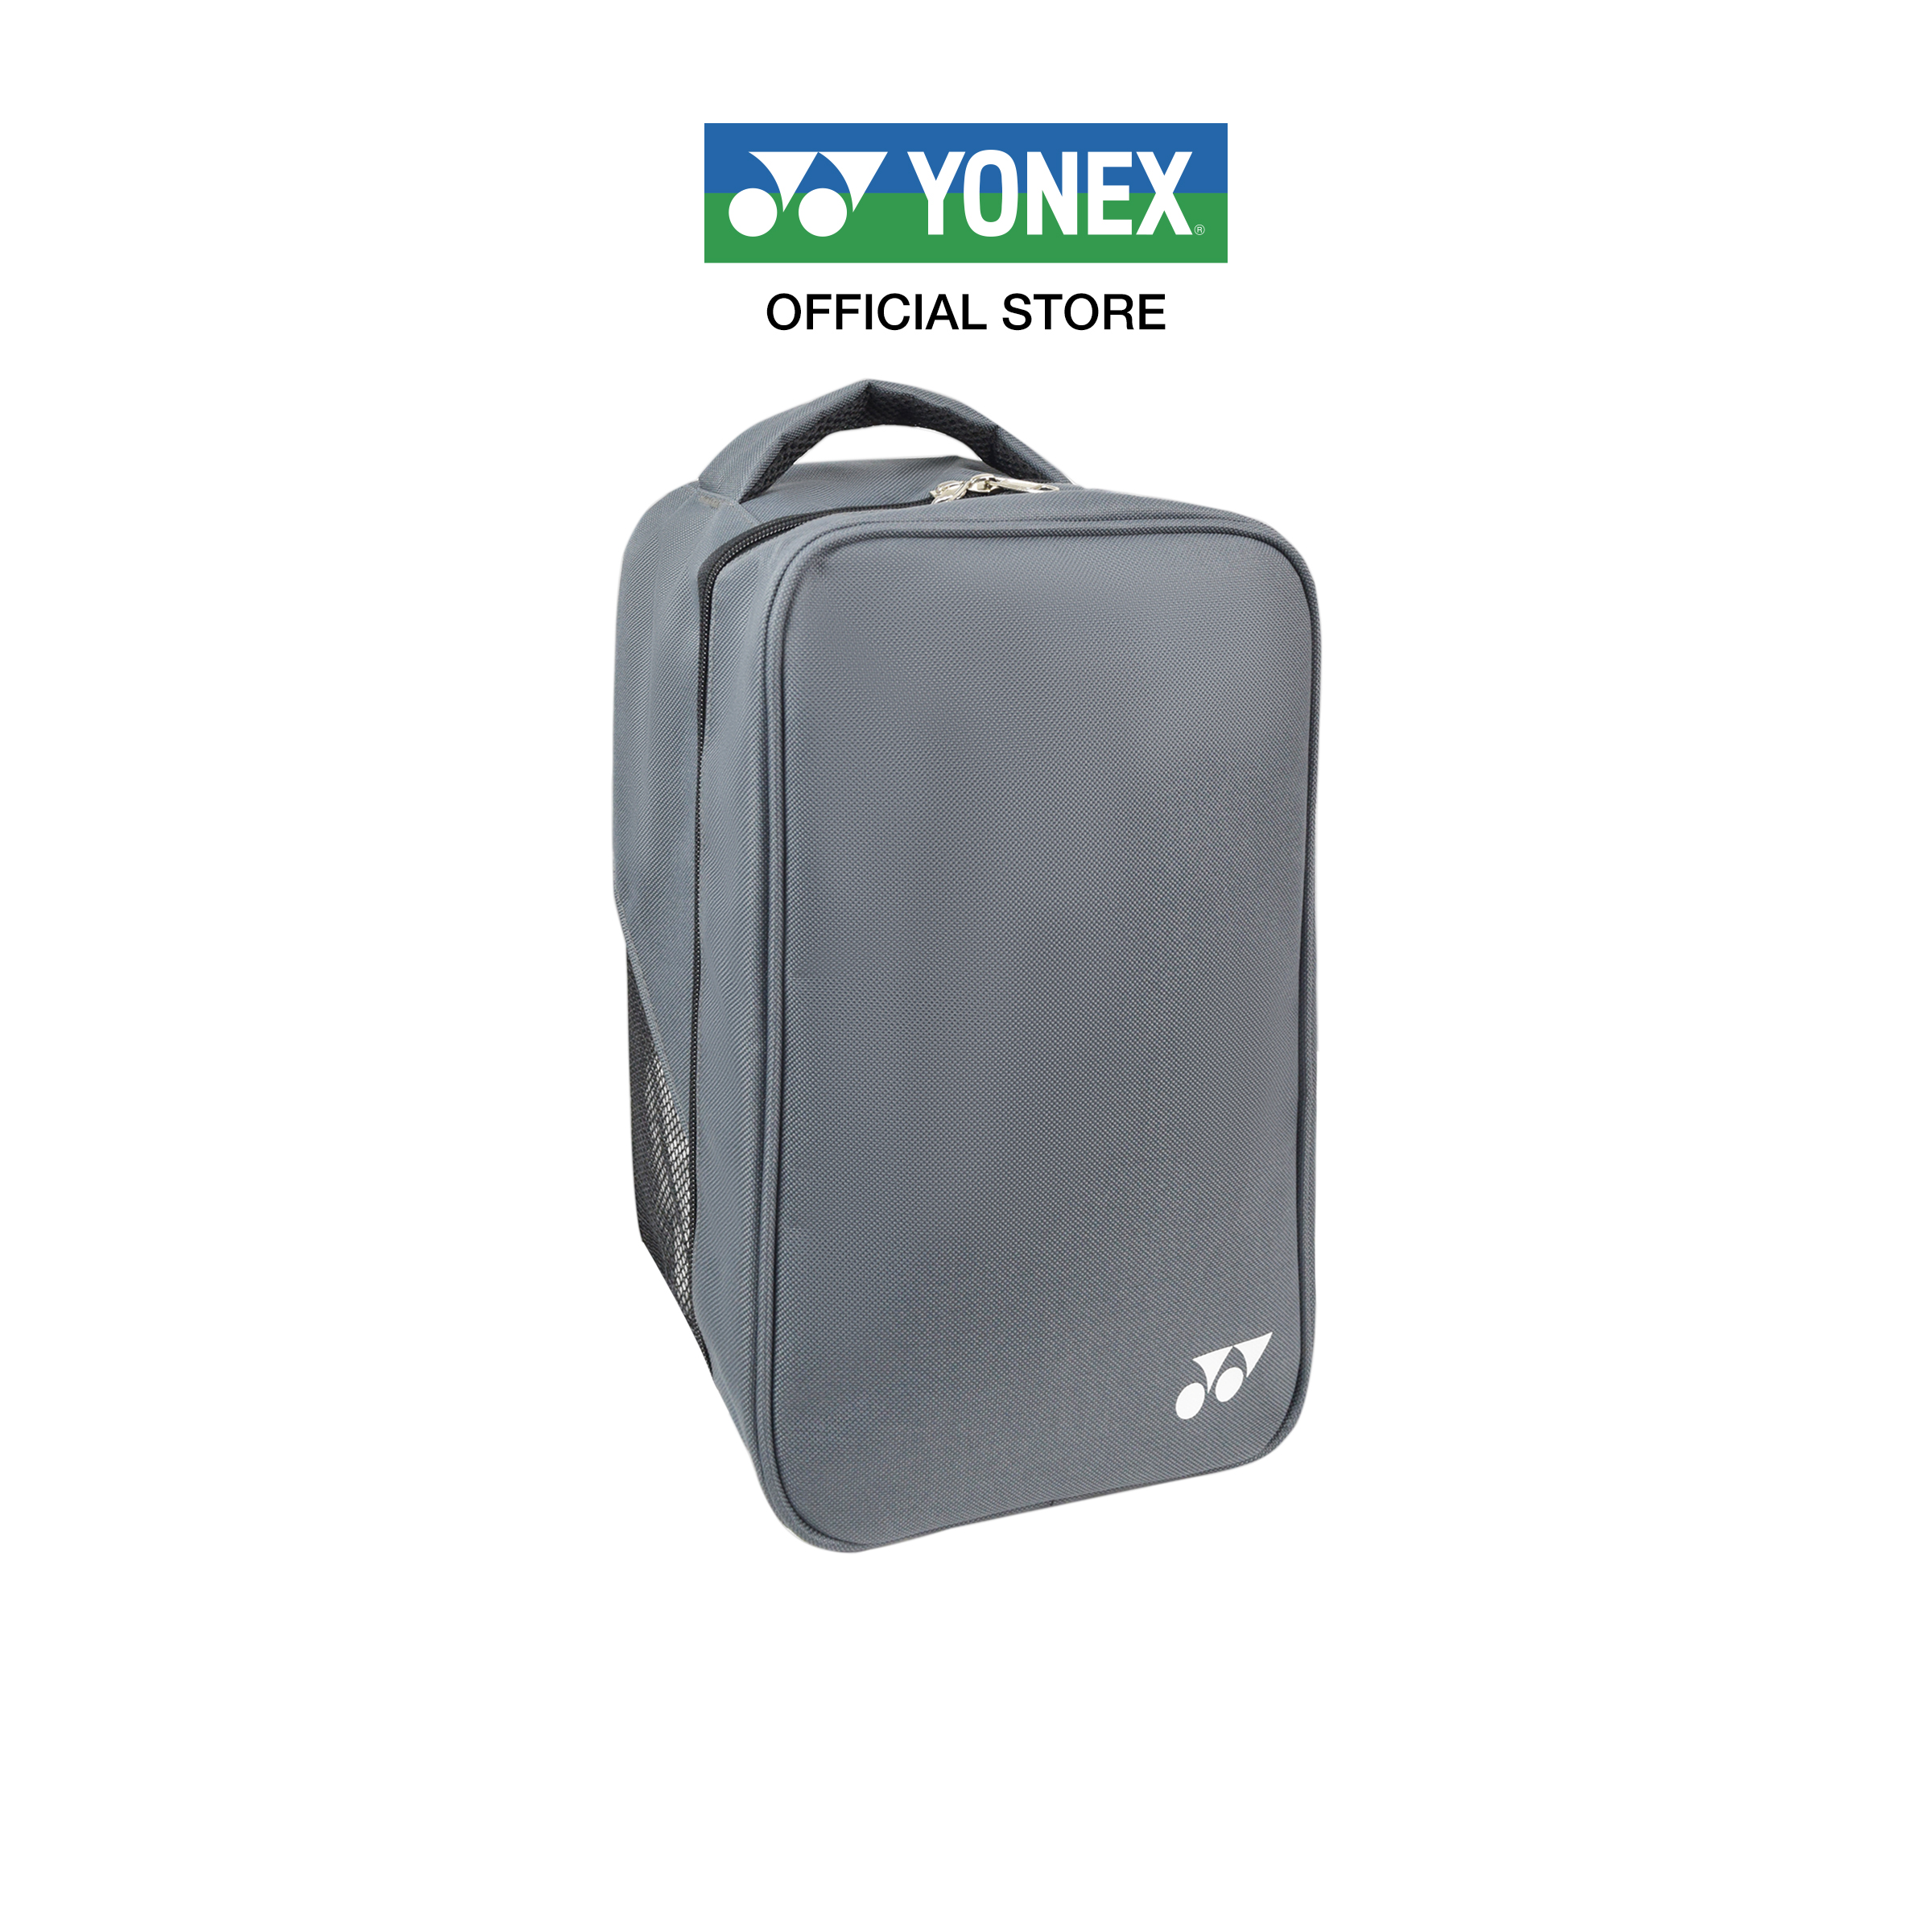 YONEX รุ่น ACTIVE SHOE BAG (BA0008TH) กระเป๋ารองเท้า สำหรับใส่รองเท้าแบดมินตัน 1 คู่ มีตาข่ายสำหรับการระบายอากาศ ขนาดกระเป๋า 20x13x33 CM